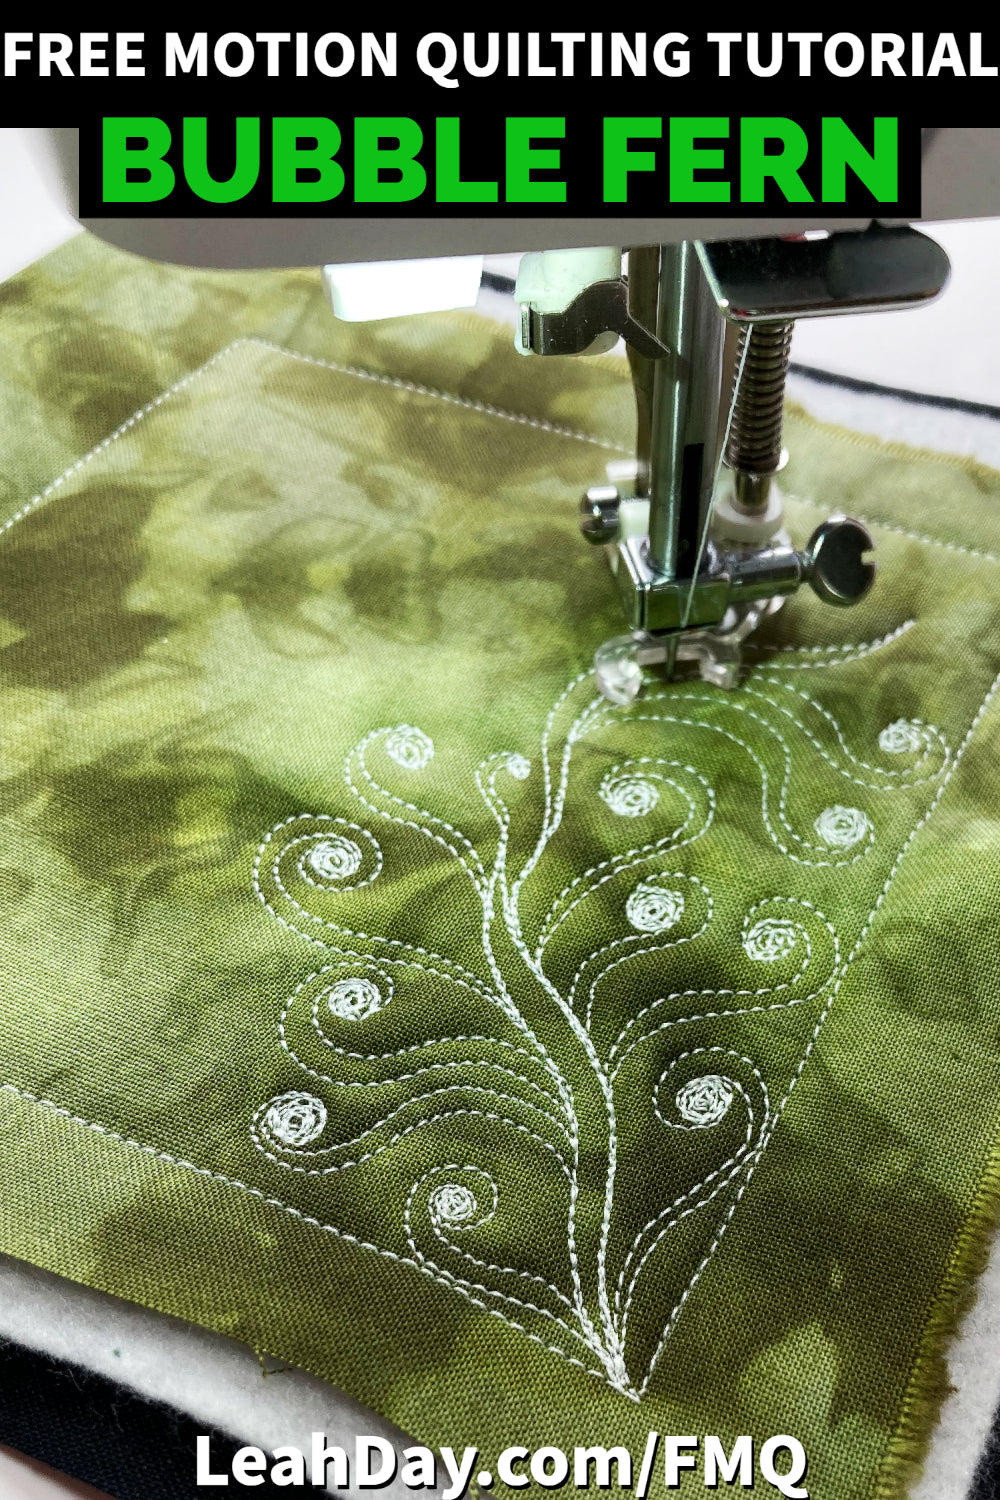 Cotton Hand-stitched Quilt in Fern